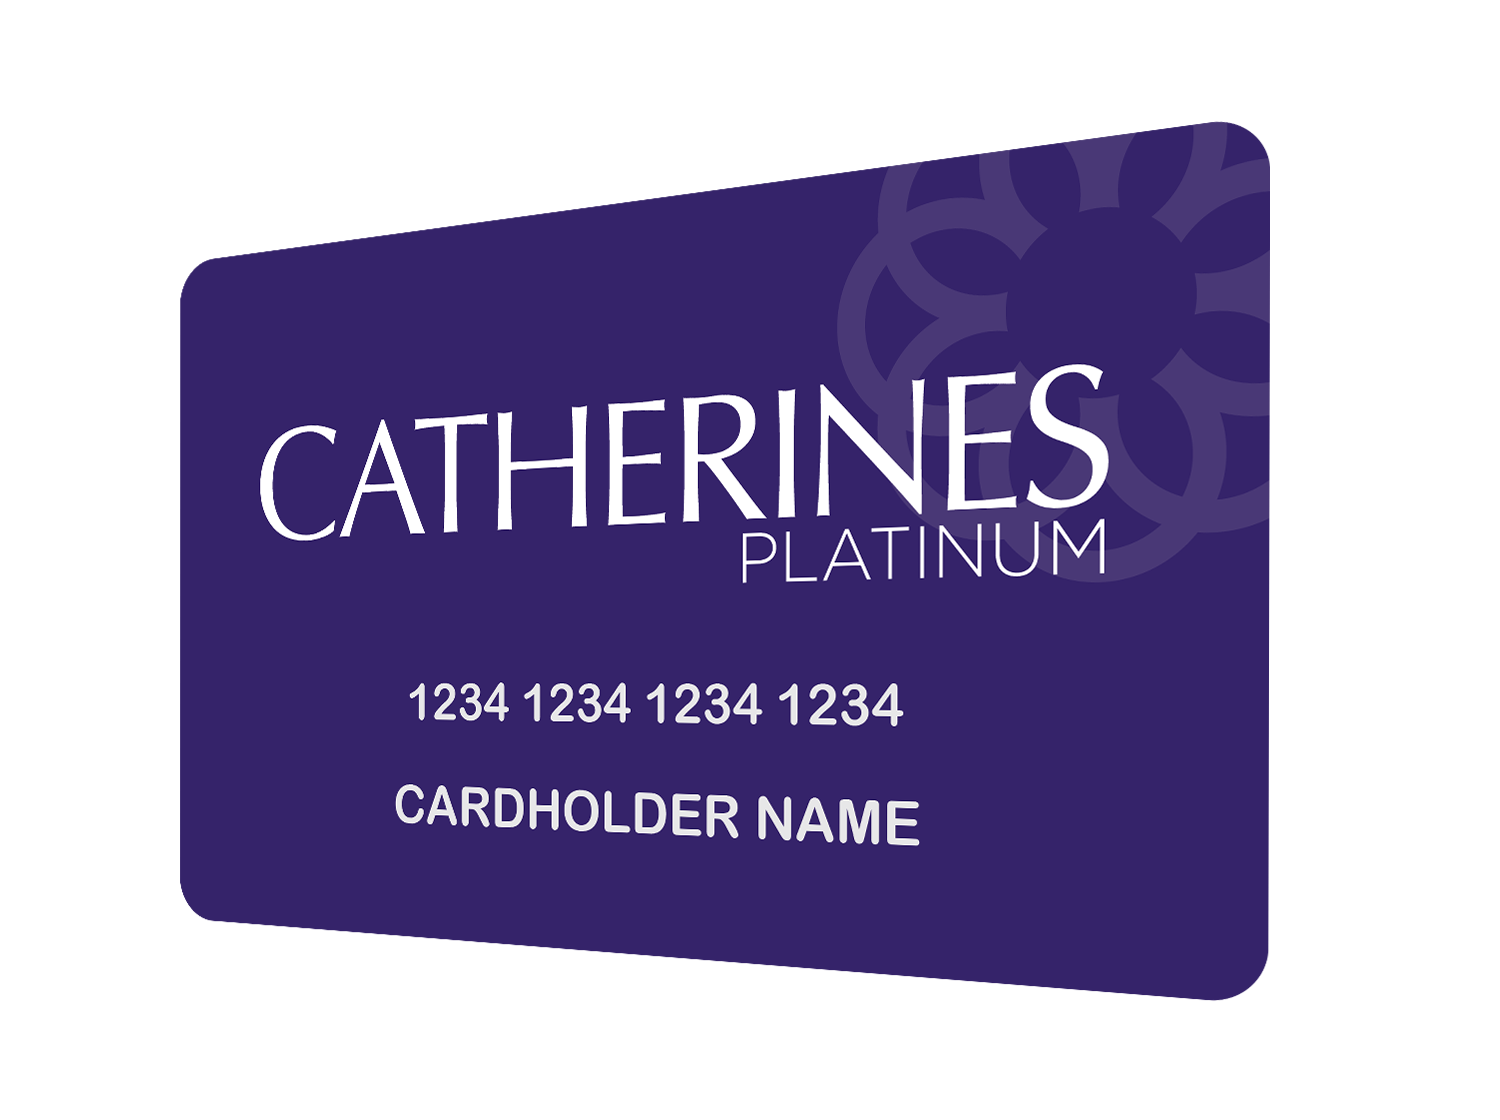 Catherines Platinum Credit Card